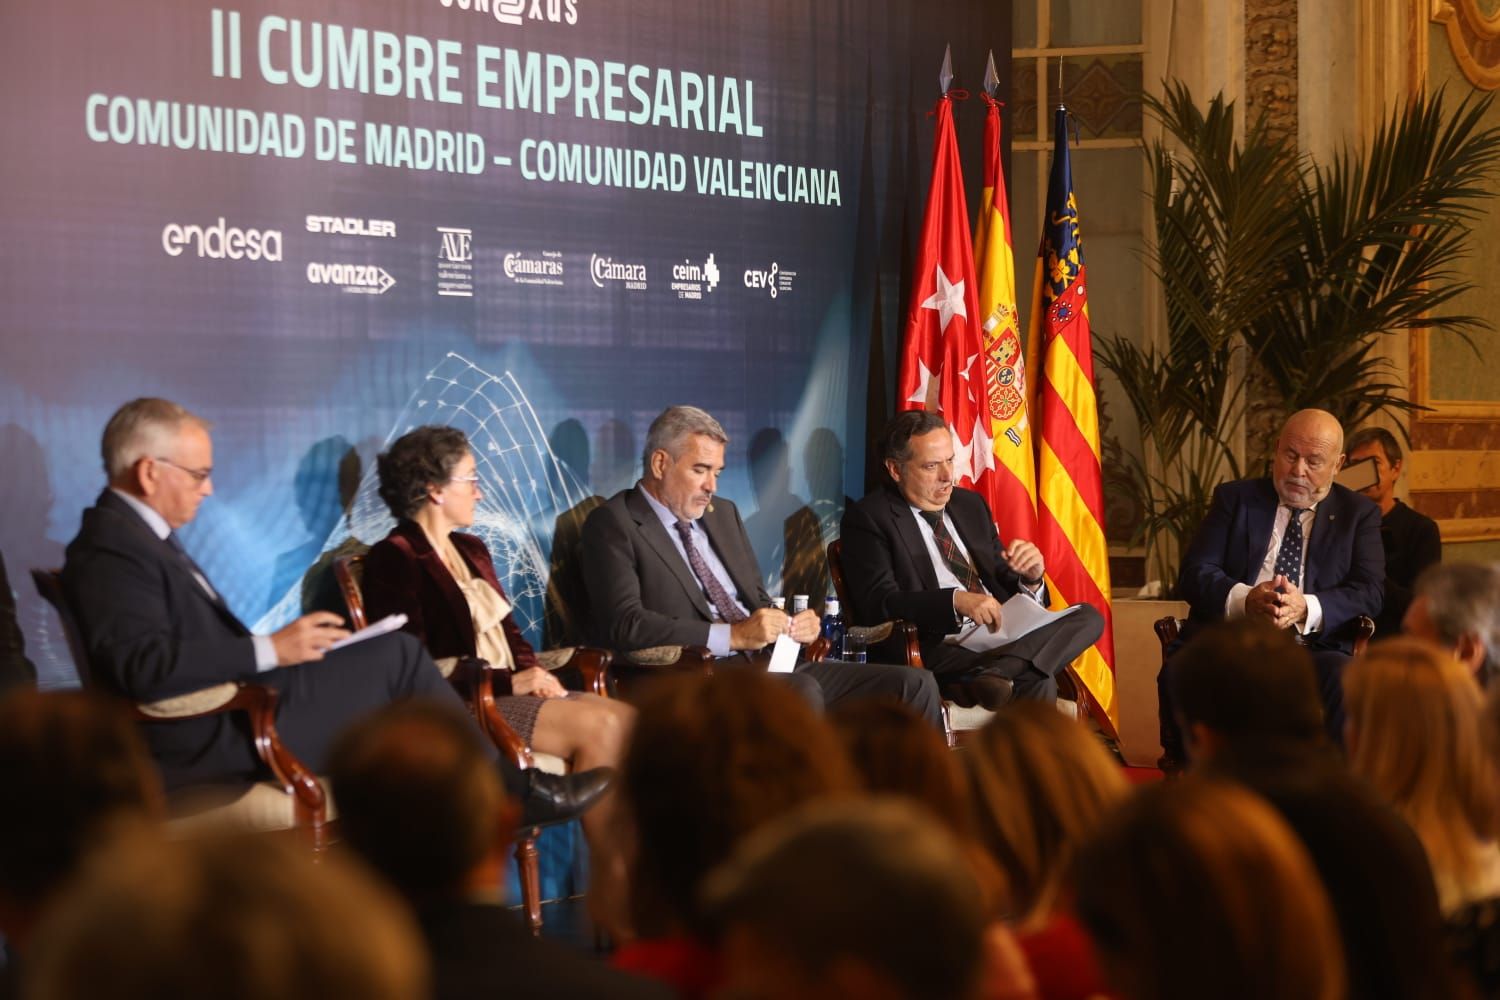 II Cumbre Empresarial Madrid - Comunitat Valenciana